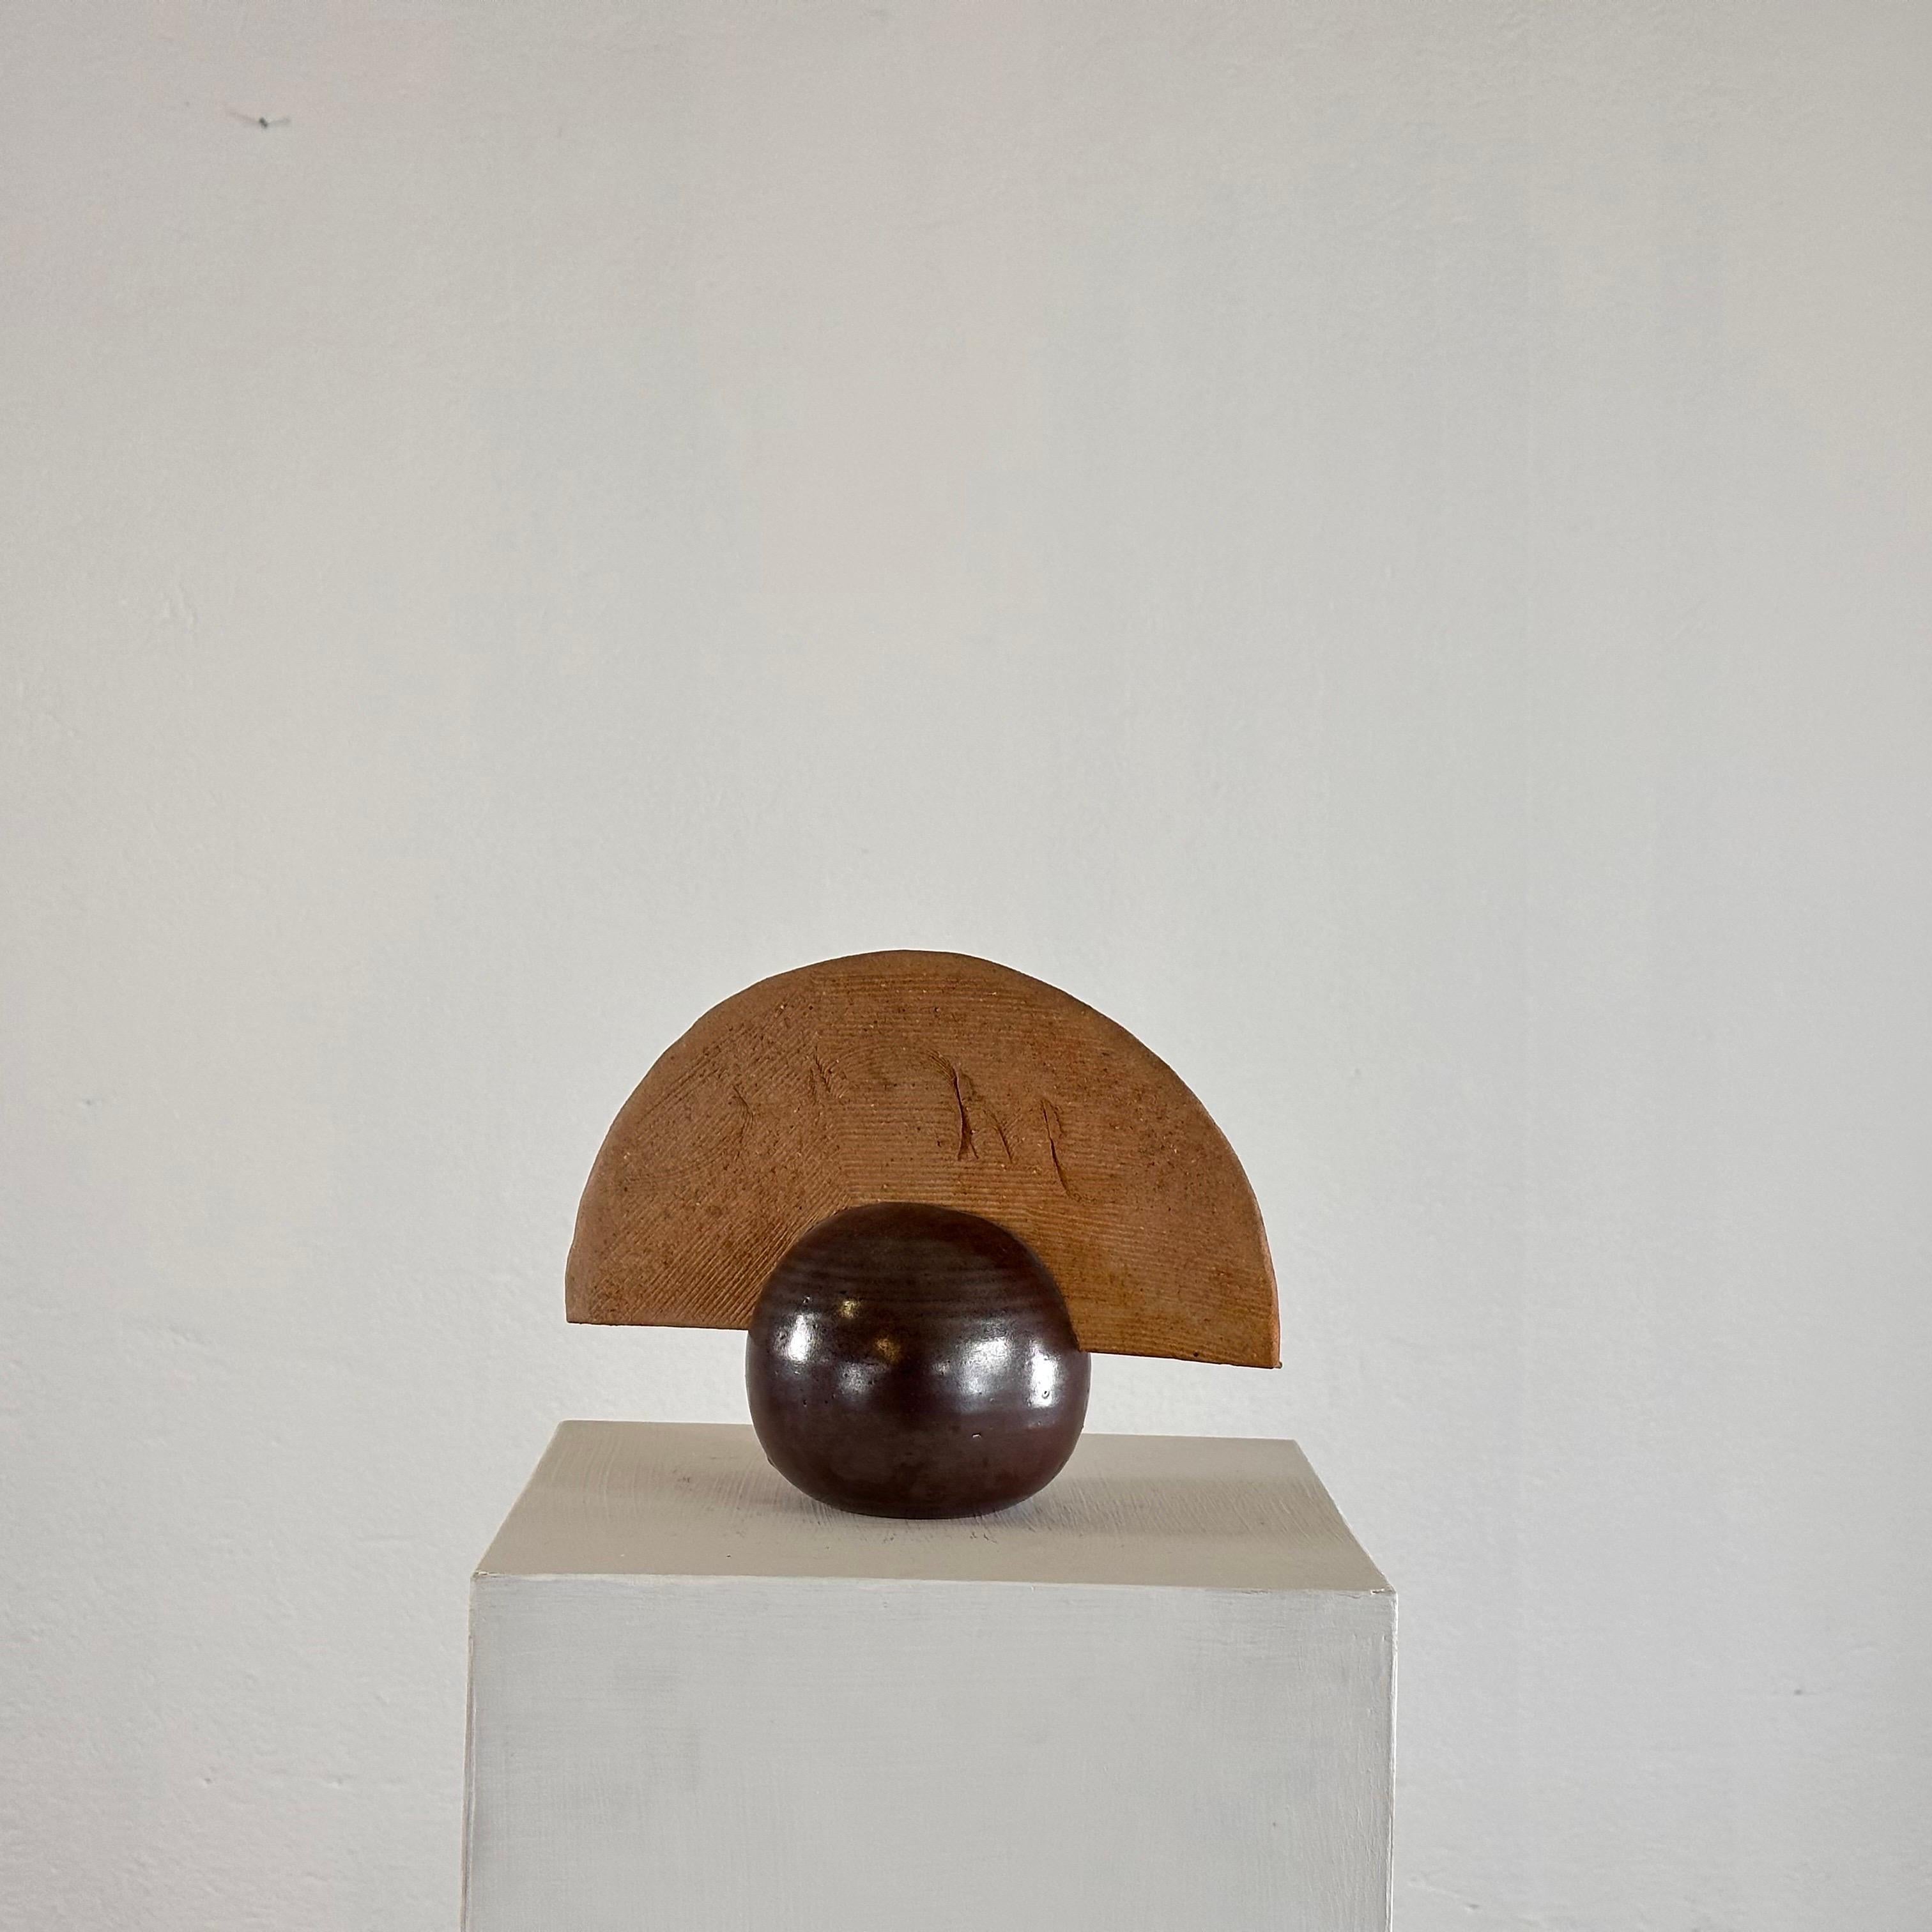 Rappelant un gracieux éventail délicatement posé sur une sphère, cette sculpture est un mélange saisissant de formes abstraites et d'artisanat méticuleux.

Fabriquée avec soin et précision, cette pièce décorative présente des détails complexes